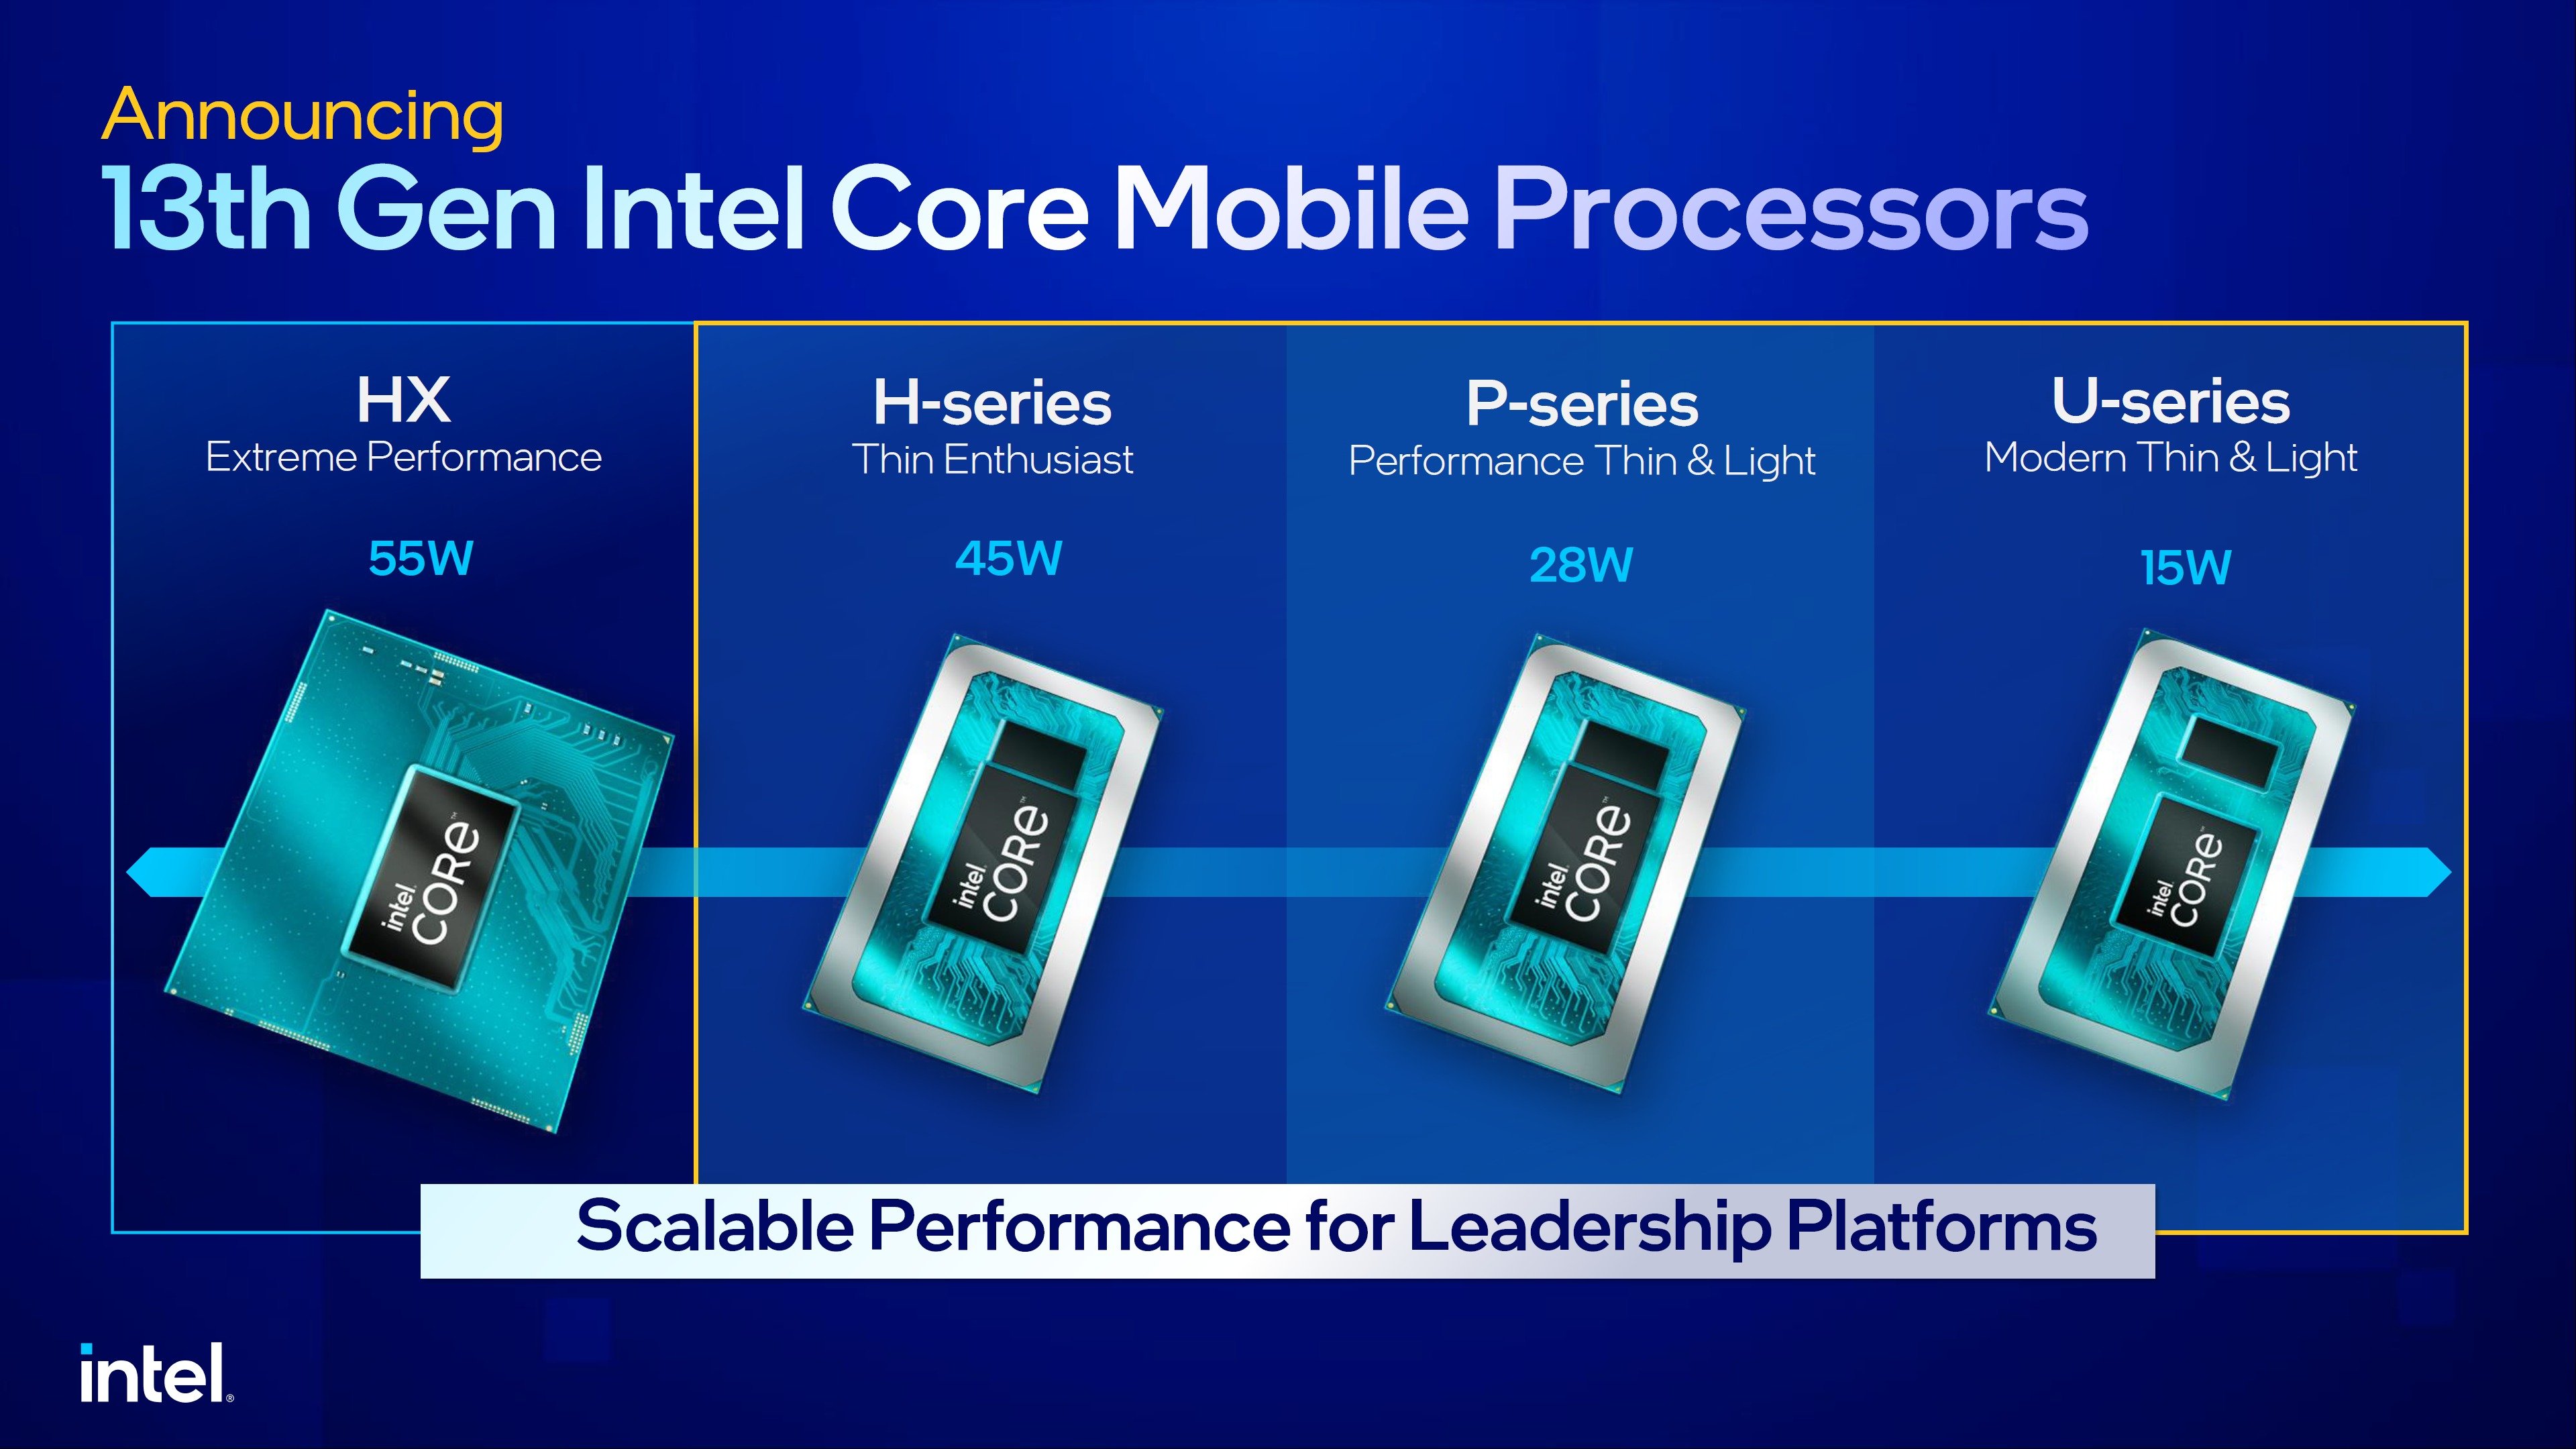 Intel anuncia linha de processadores de 11ª geração para notebooks